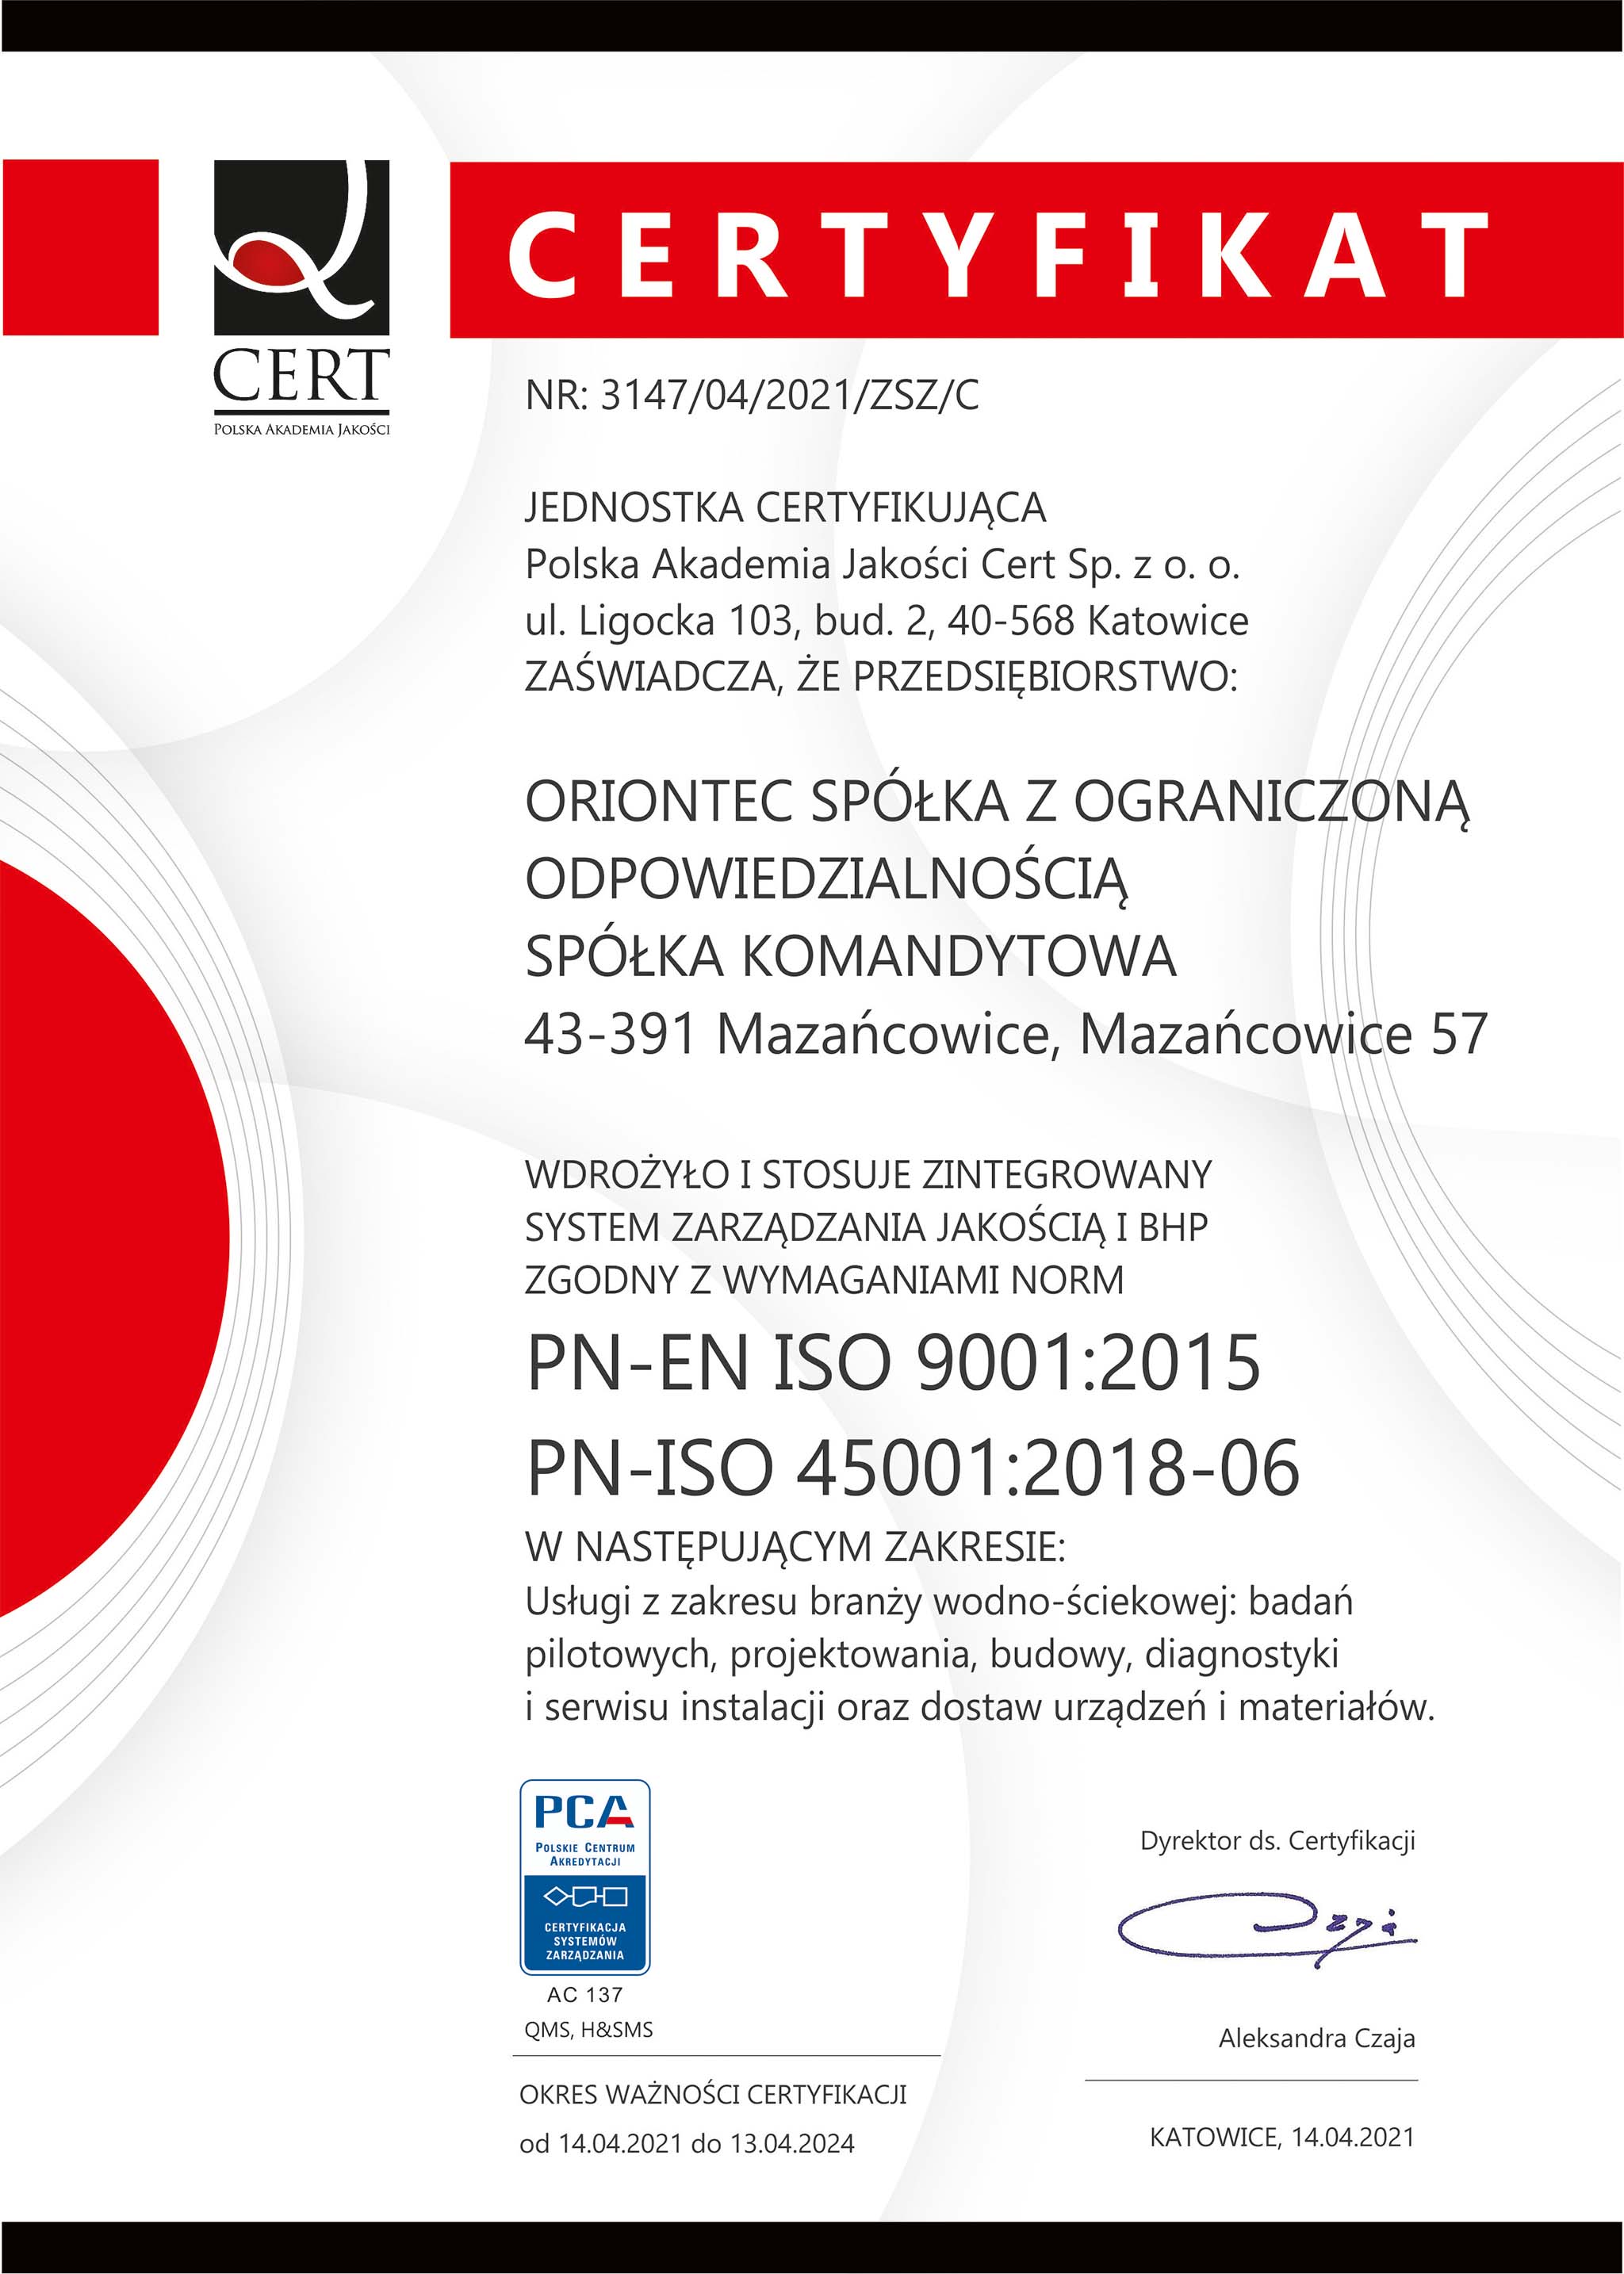 Certyfikat Zintegrowany System Zarządzania Jakością i BHP